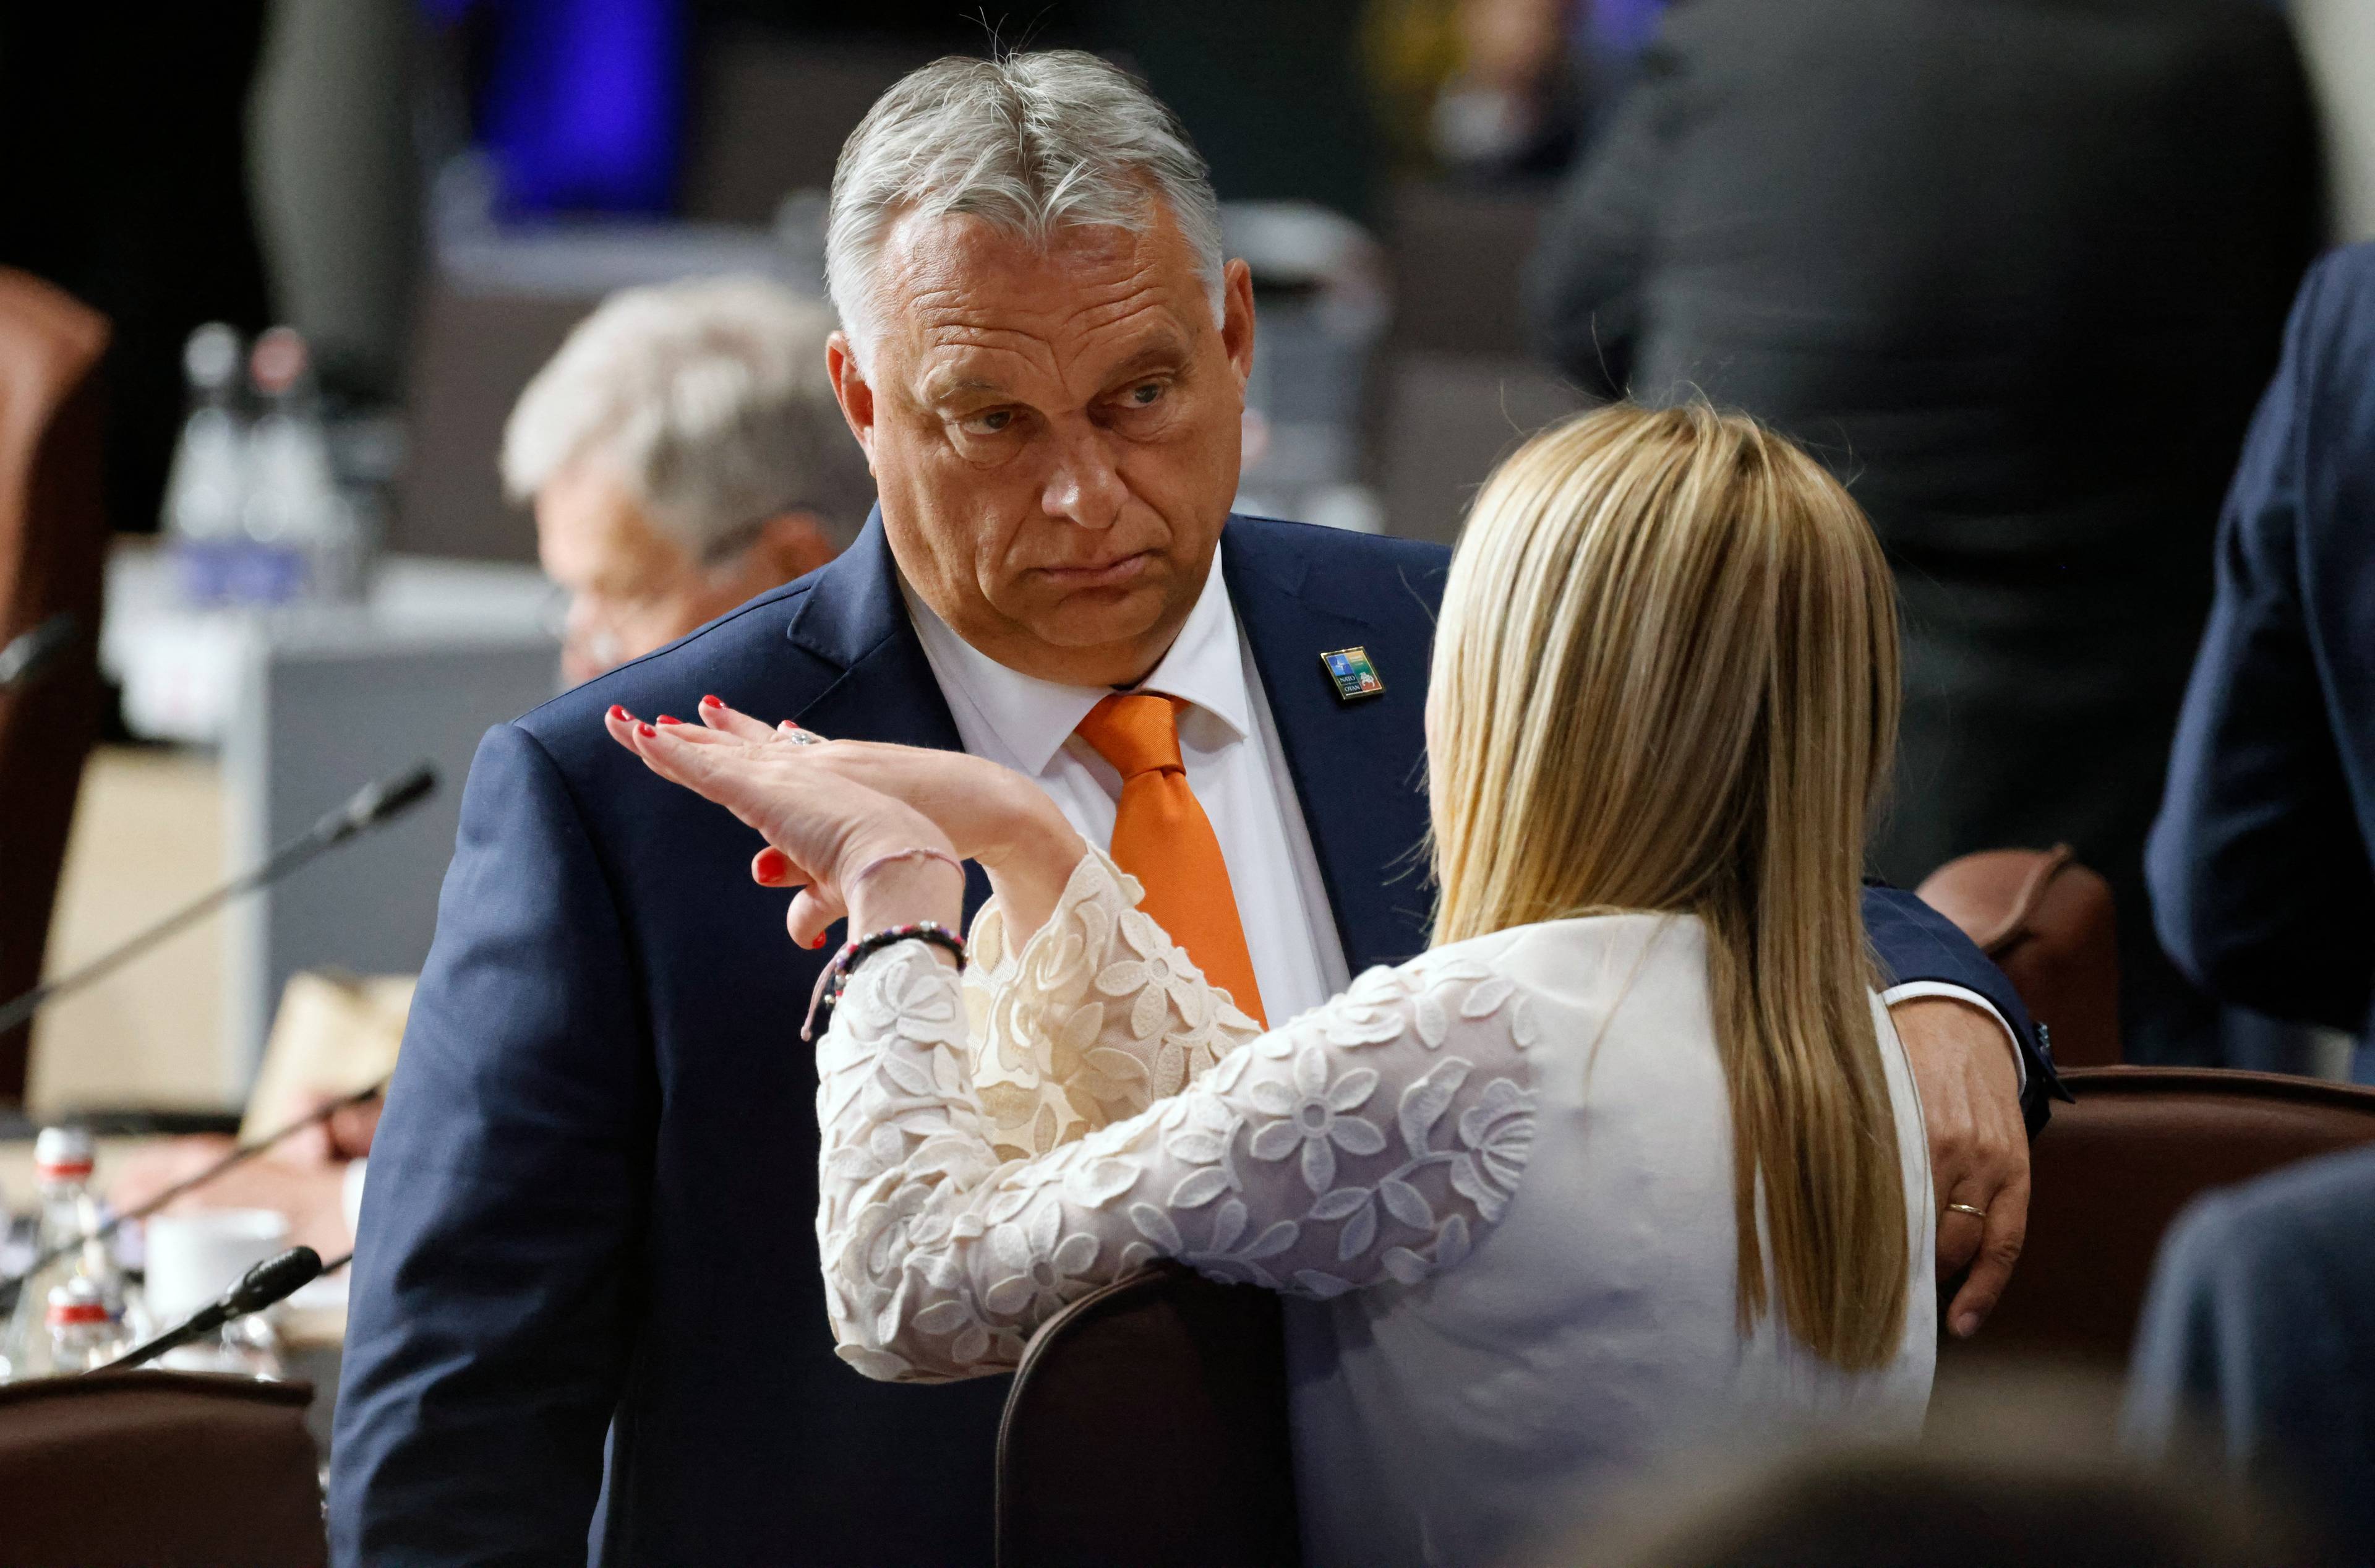 Gruby męzczyzna w pomarańczowym krawacie i jasnowłosa kobieta, która ostro gestykuluje. Orban i Melloni